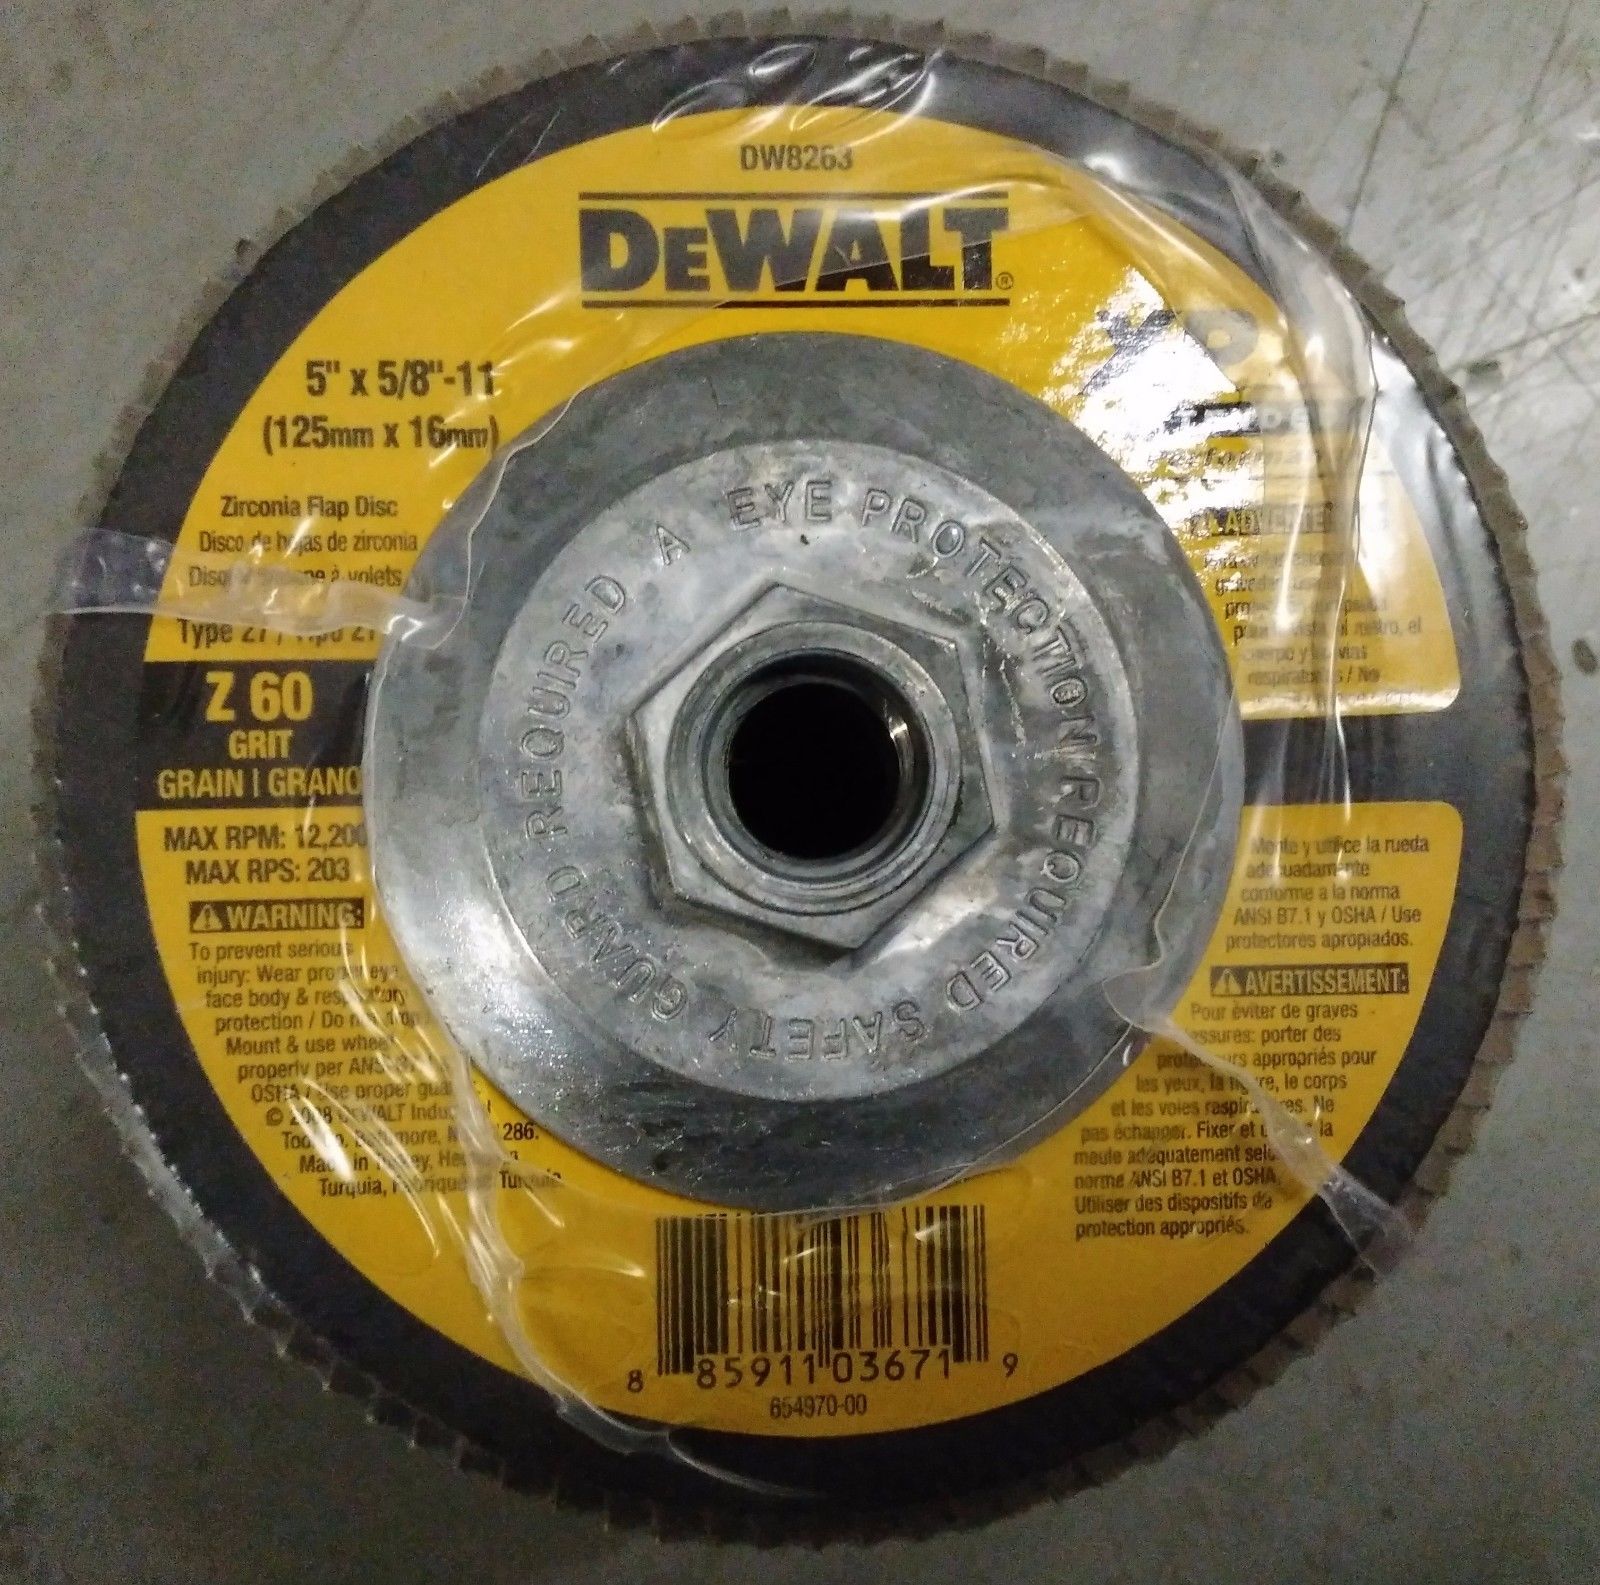 DEWALT DW8263 5" x 5/8"-11 60-Grit Extended Performance Flap Disc (5-pack)